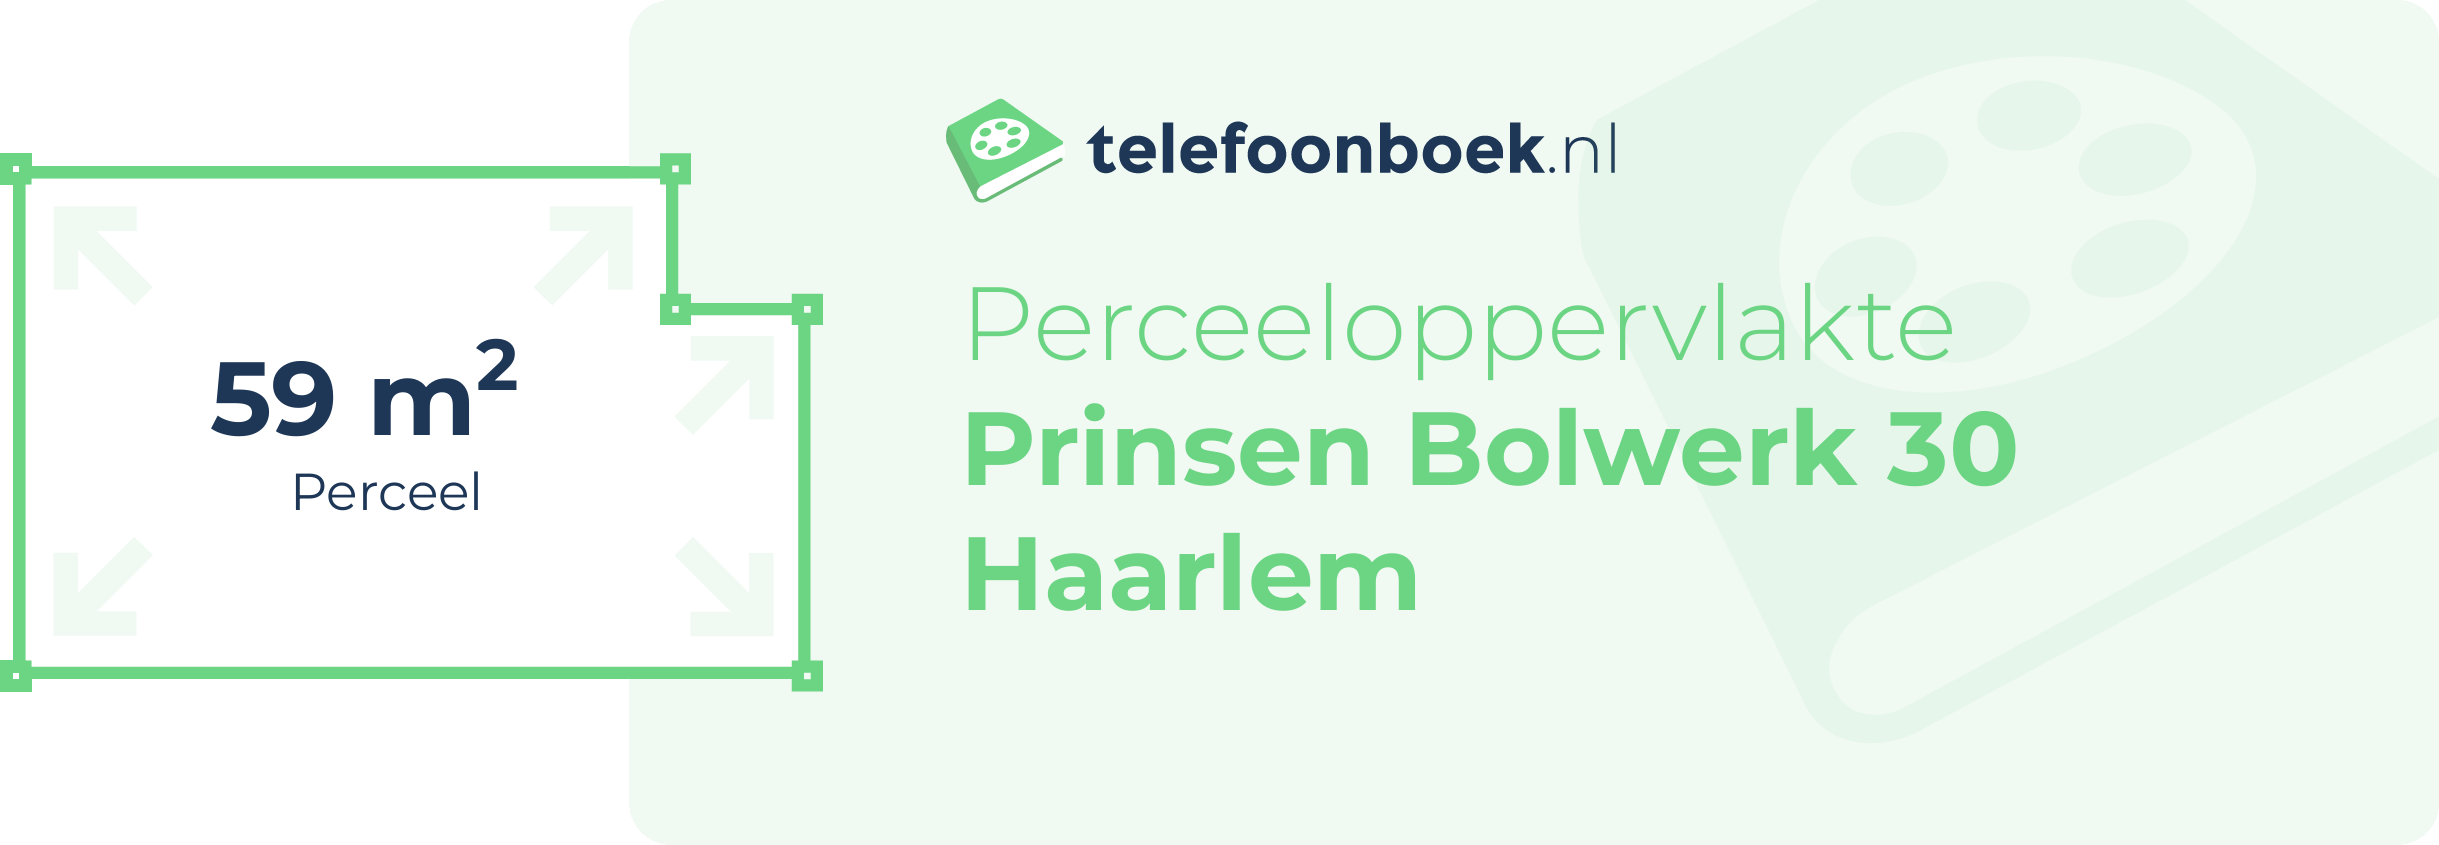 Perceeloppervlakte Prinsen Bolwerk 30 Haarlem